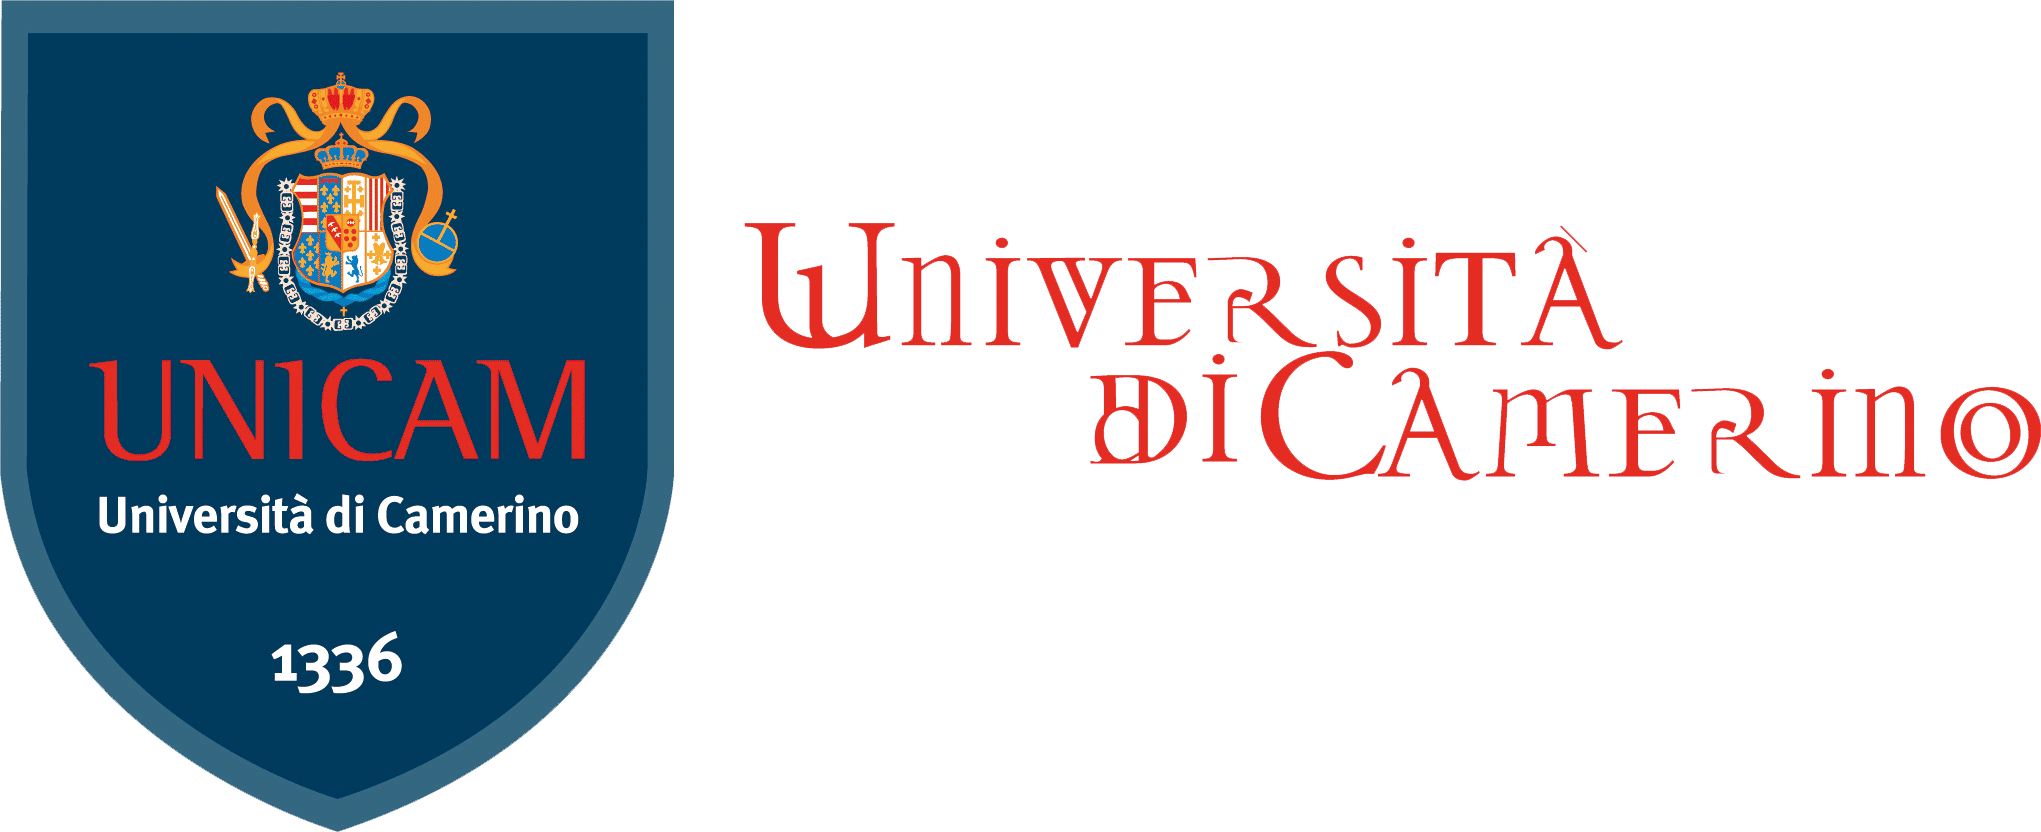 unicam-universita-di-camerino-1